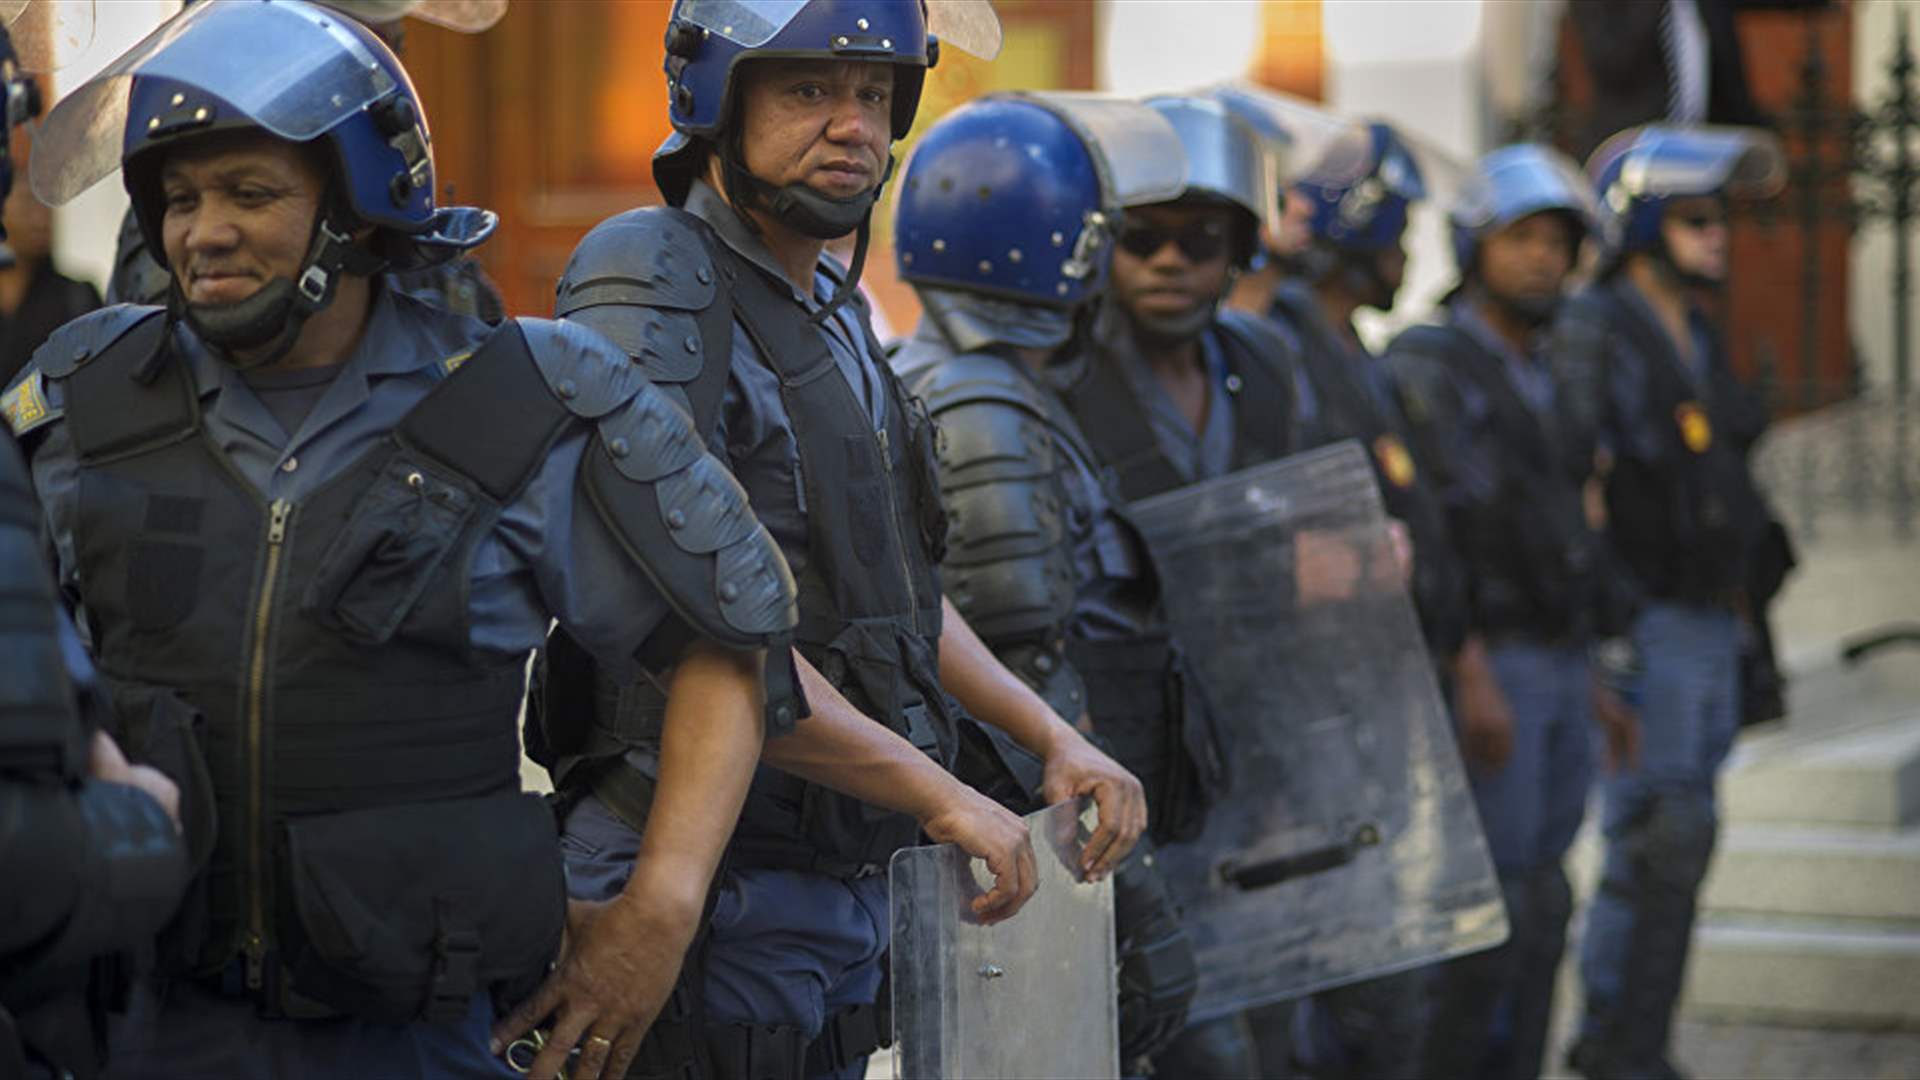 شرطة جنوب إفريقيا تعلن اعتقال 95 ليبياً في موقع يُشتبه بأنه قاعدة عسكرية